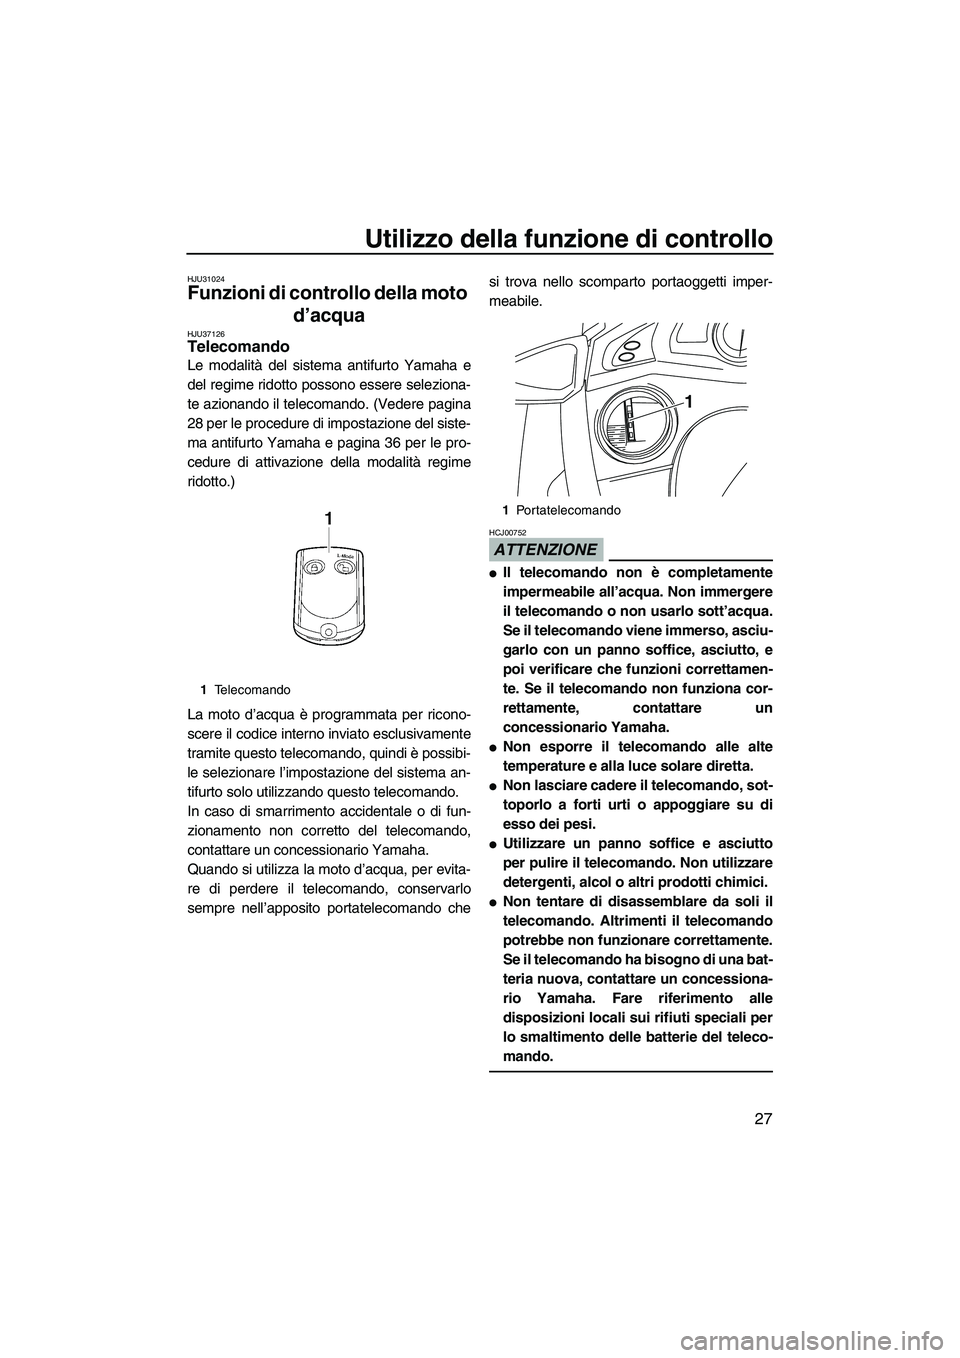 YAMAHA FX HO CRUISER 2010  Manuale duso (in Italian) Utilizzo della funzione di controllo
27
HJU31024
Funzioni di controllo della moto 
d’acqua 
HJU37126Telecomando 
Le modalità del sistema antifurto Yamaha e
del regime ridotto possono essere selezio